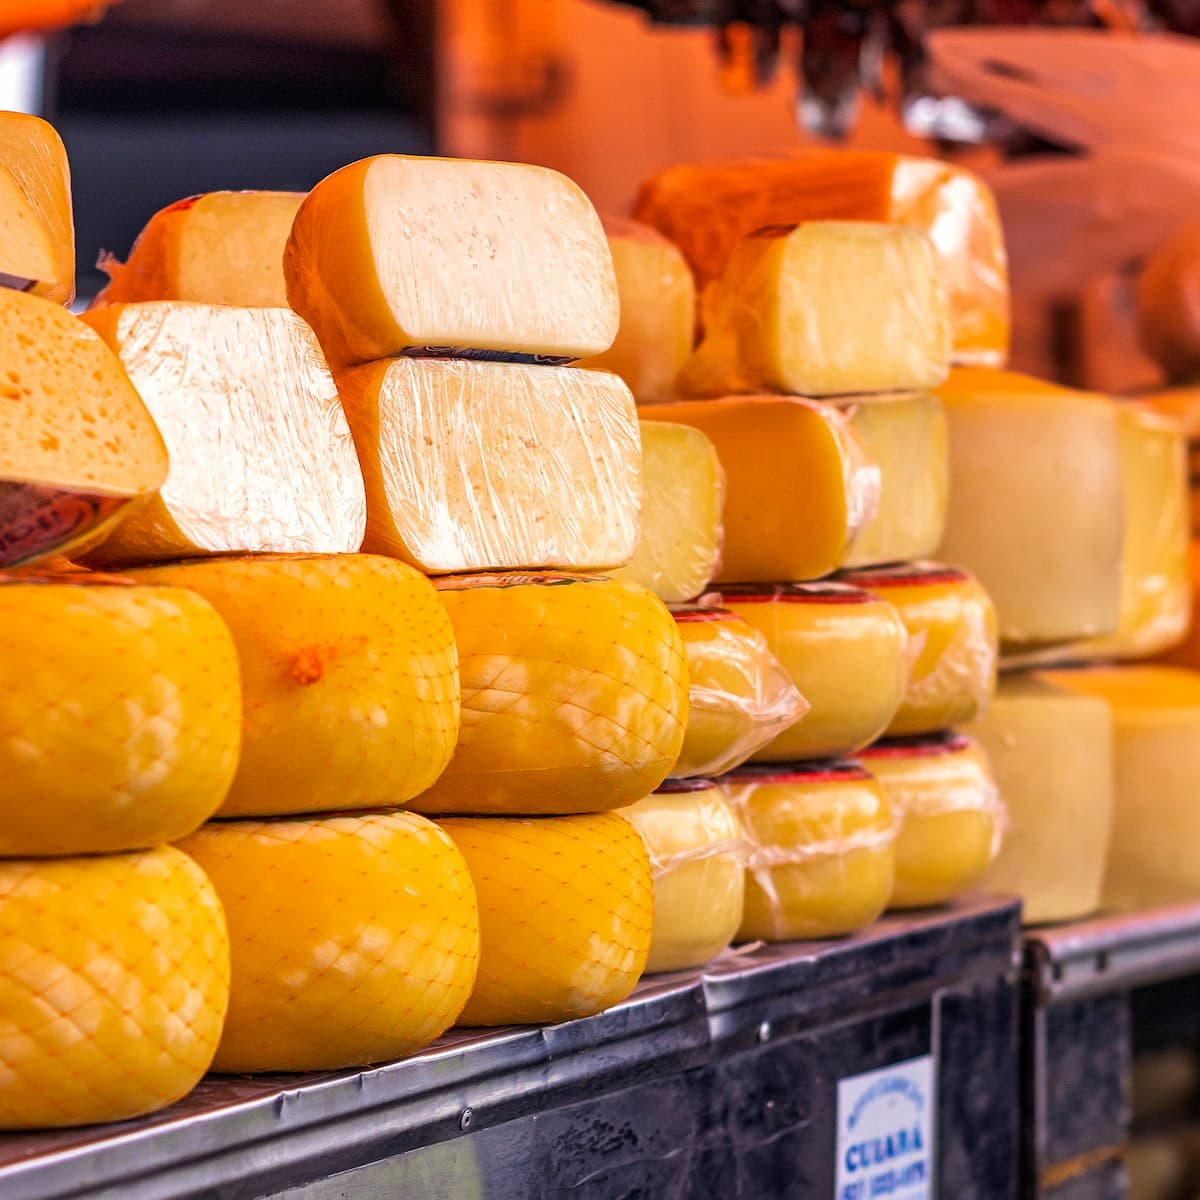 Bild zur bloßen Veranschaulichung von Käse, hergestellt in einer Käserei. Foto: Leandro Bezerra.